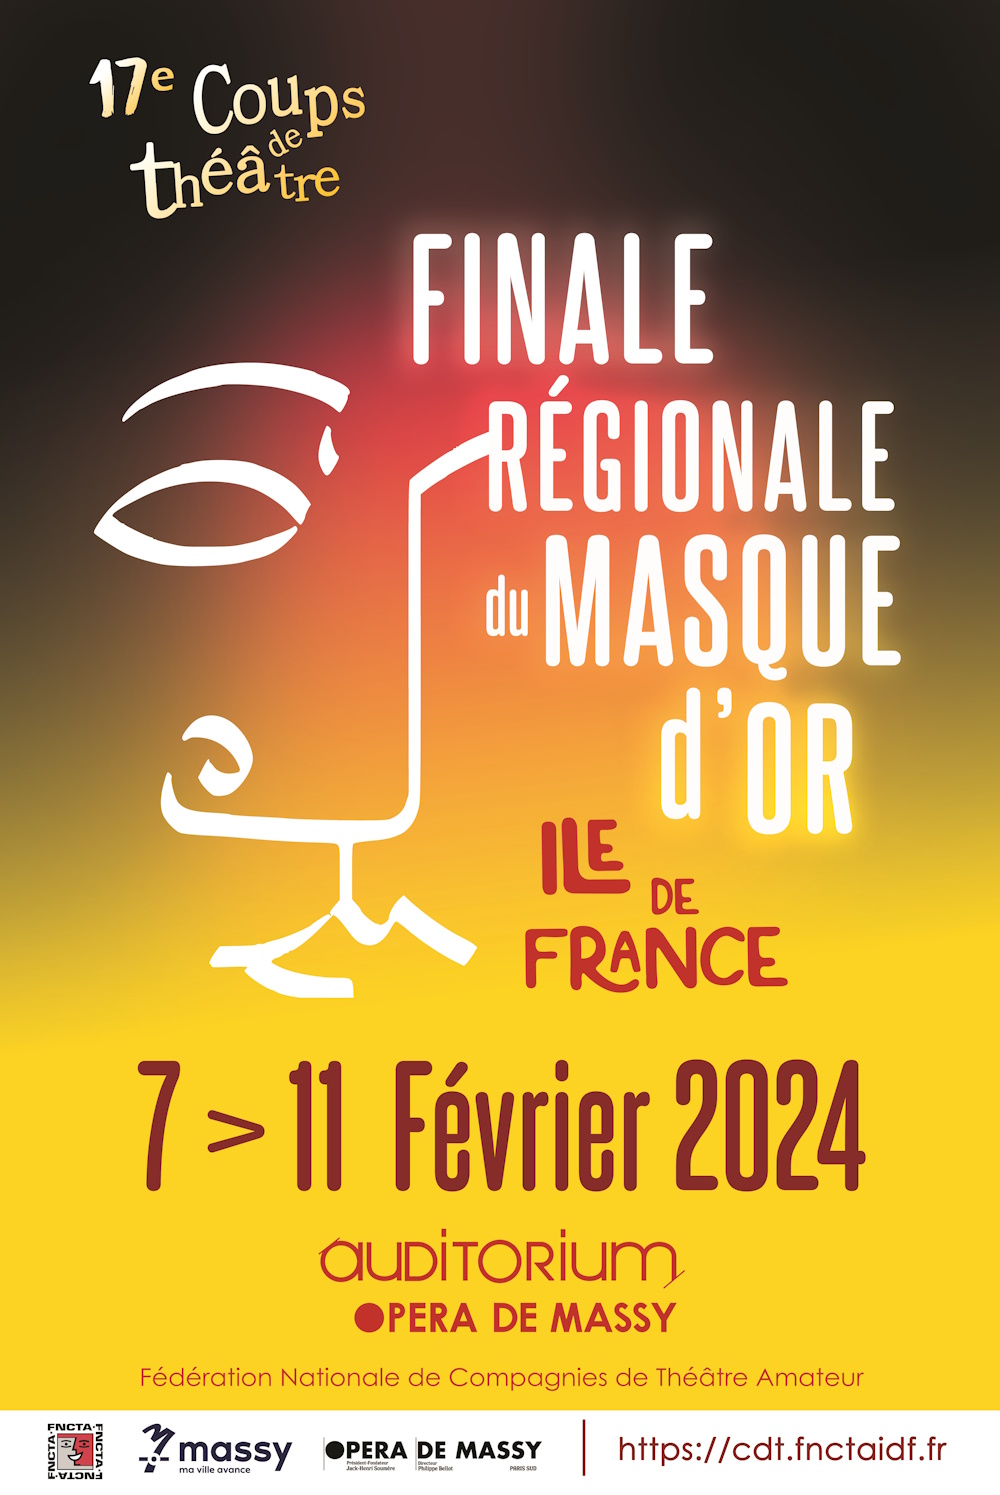 Affiche Festival "Coups de théâtre de Massy" 2024 - Finale régionale du Masque d'Or